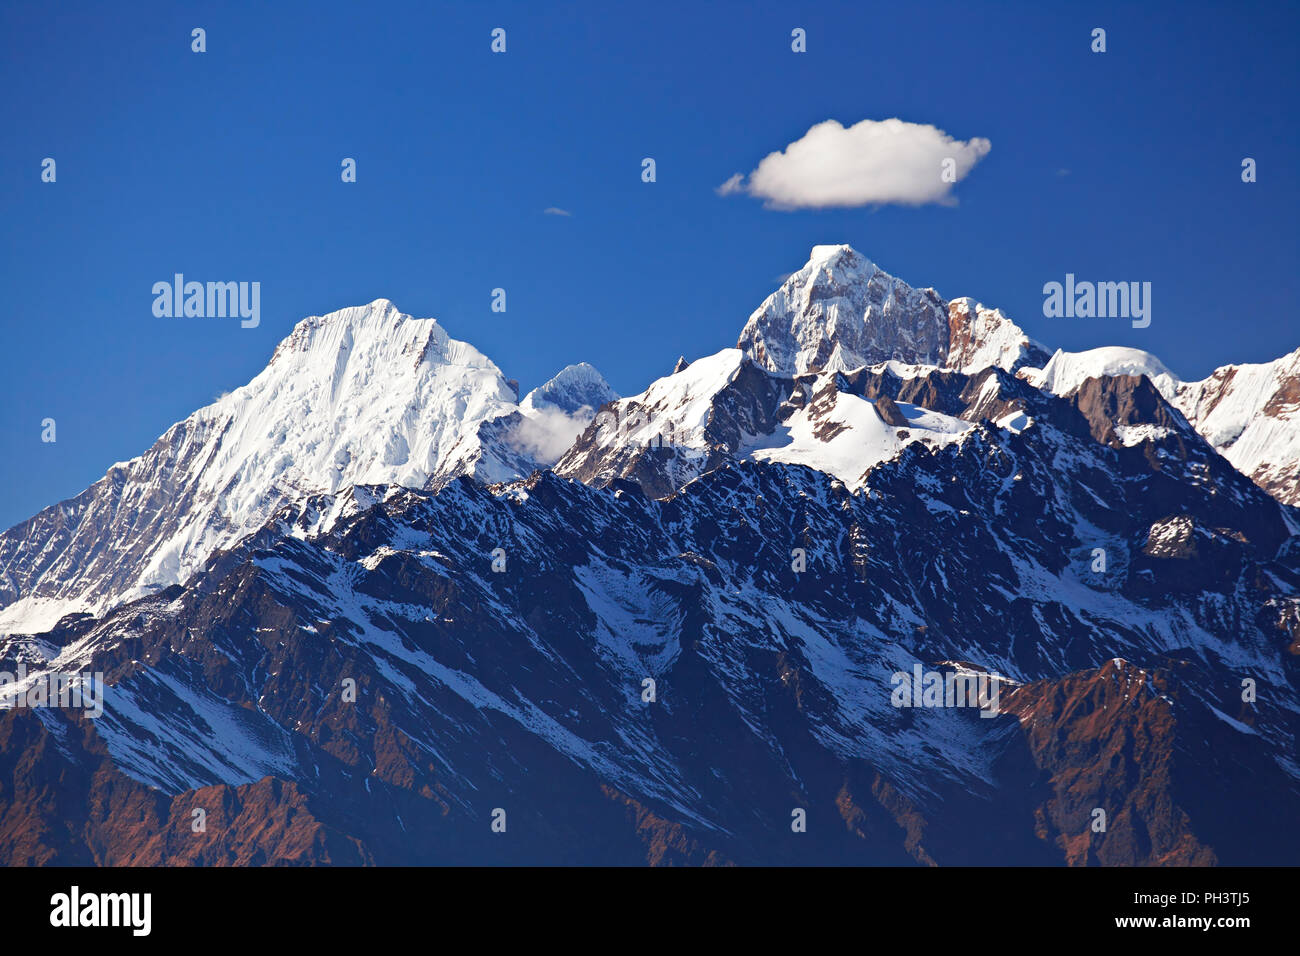 Chaîne de montagnes enneigées Manaslu Himal avec ciel bleu en journée ensoleillée. Himalaya, Langtang, Népal Banque D'Images